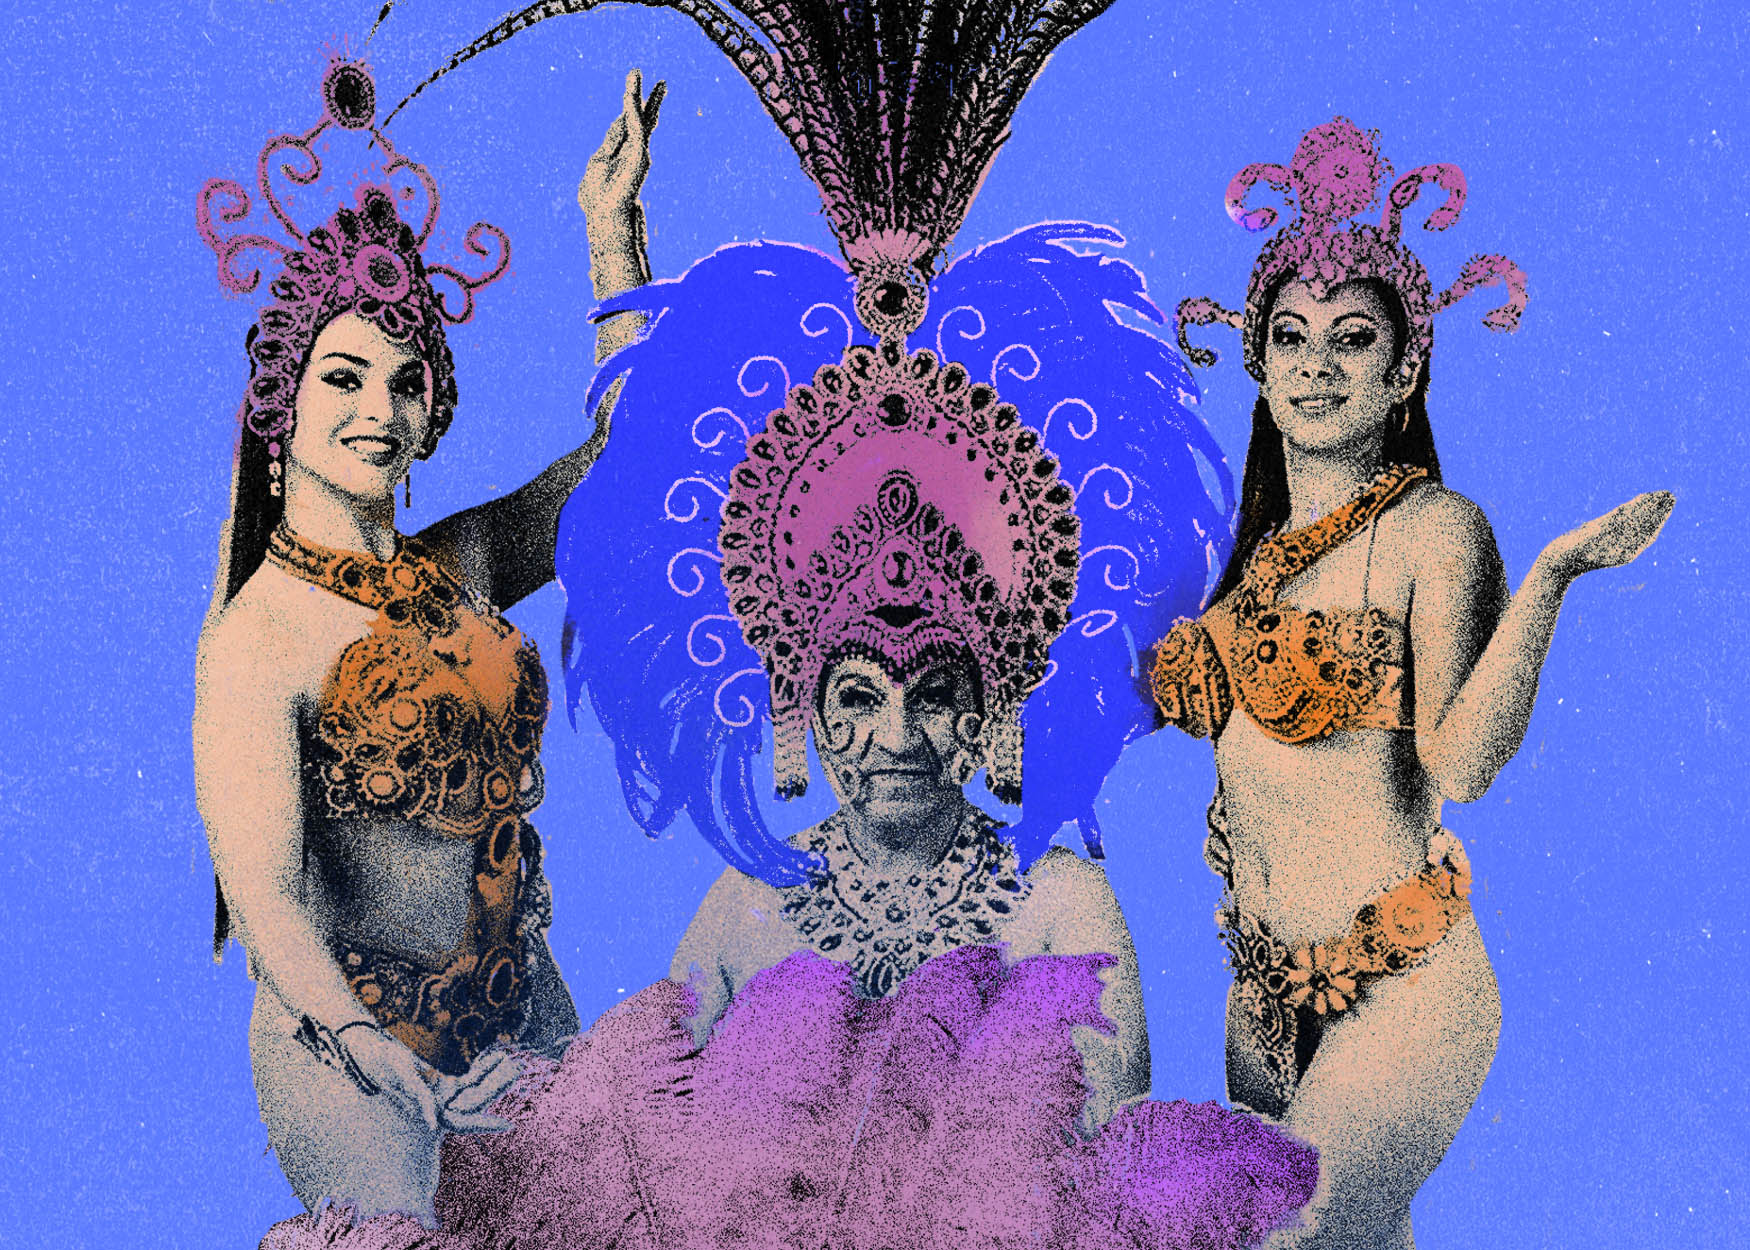 El sur tucumano y su carnaval diverso